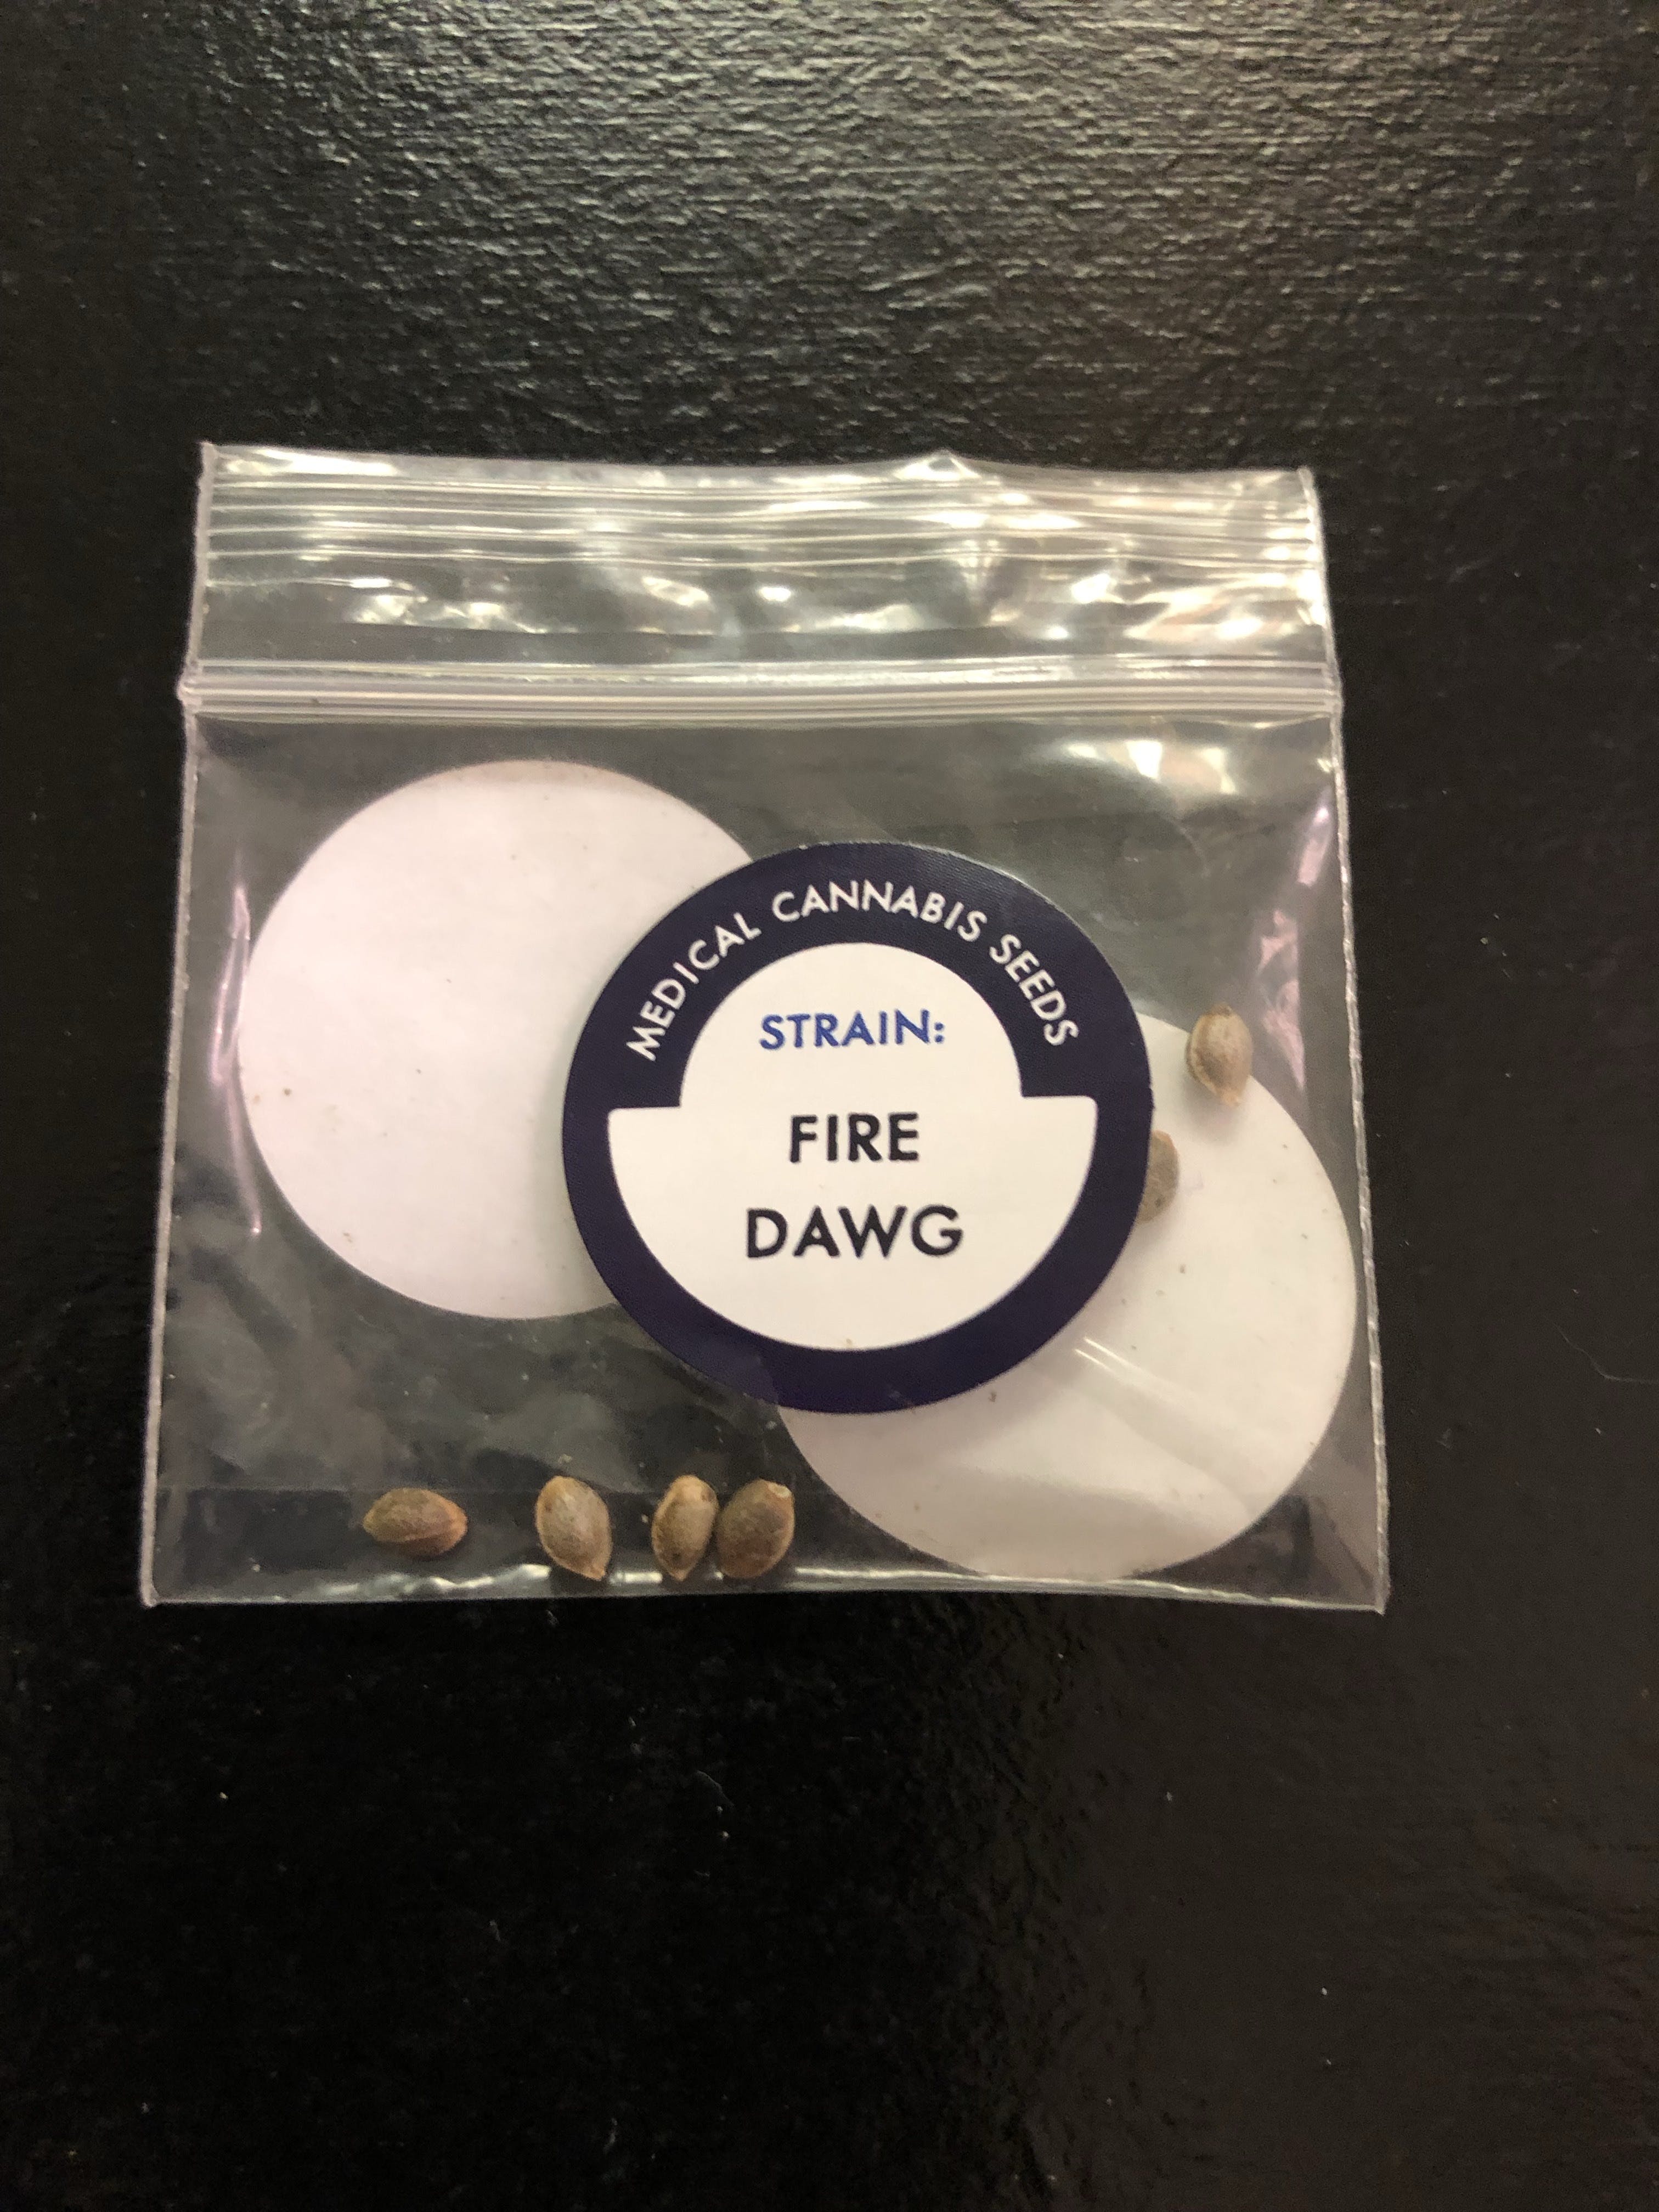 marijuana-dispensaries-9954-east-21st-street-tulsa-fire-dawgpack-of-10-seeds